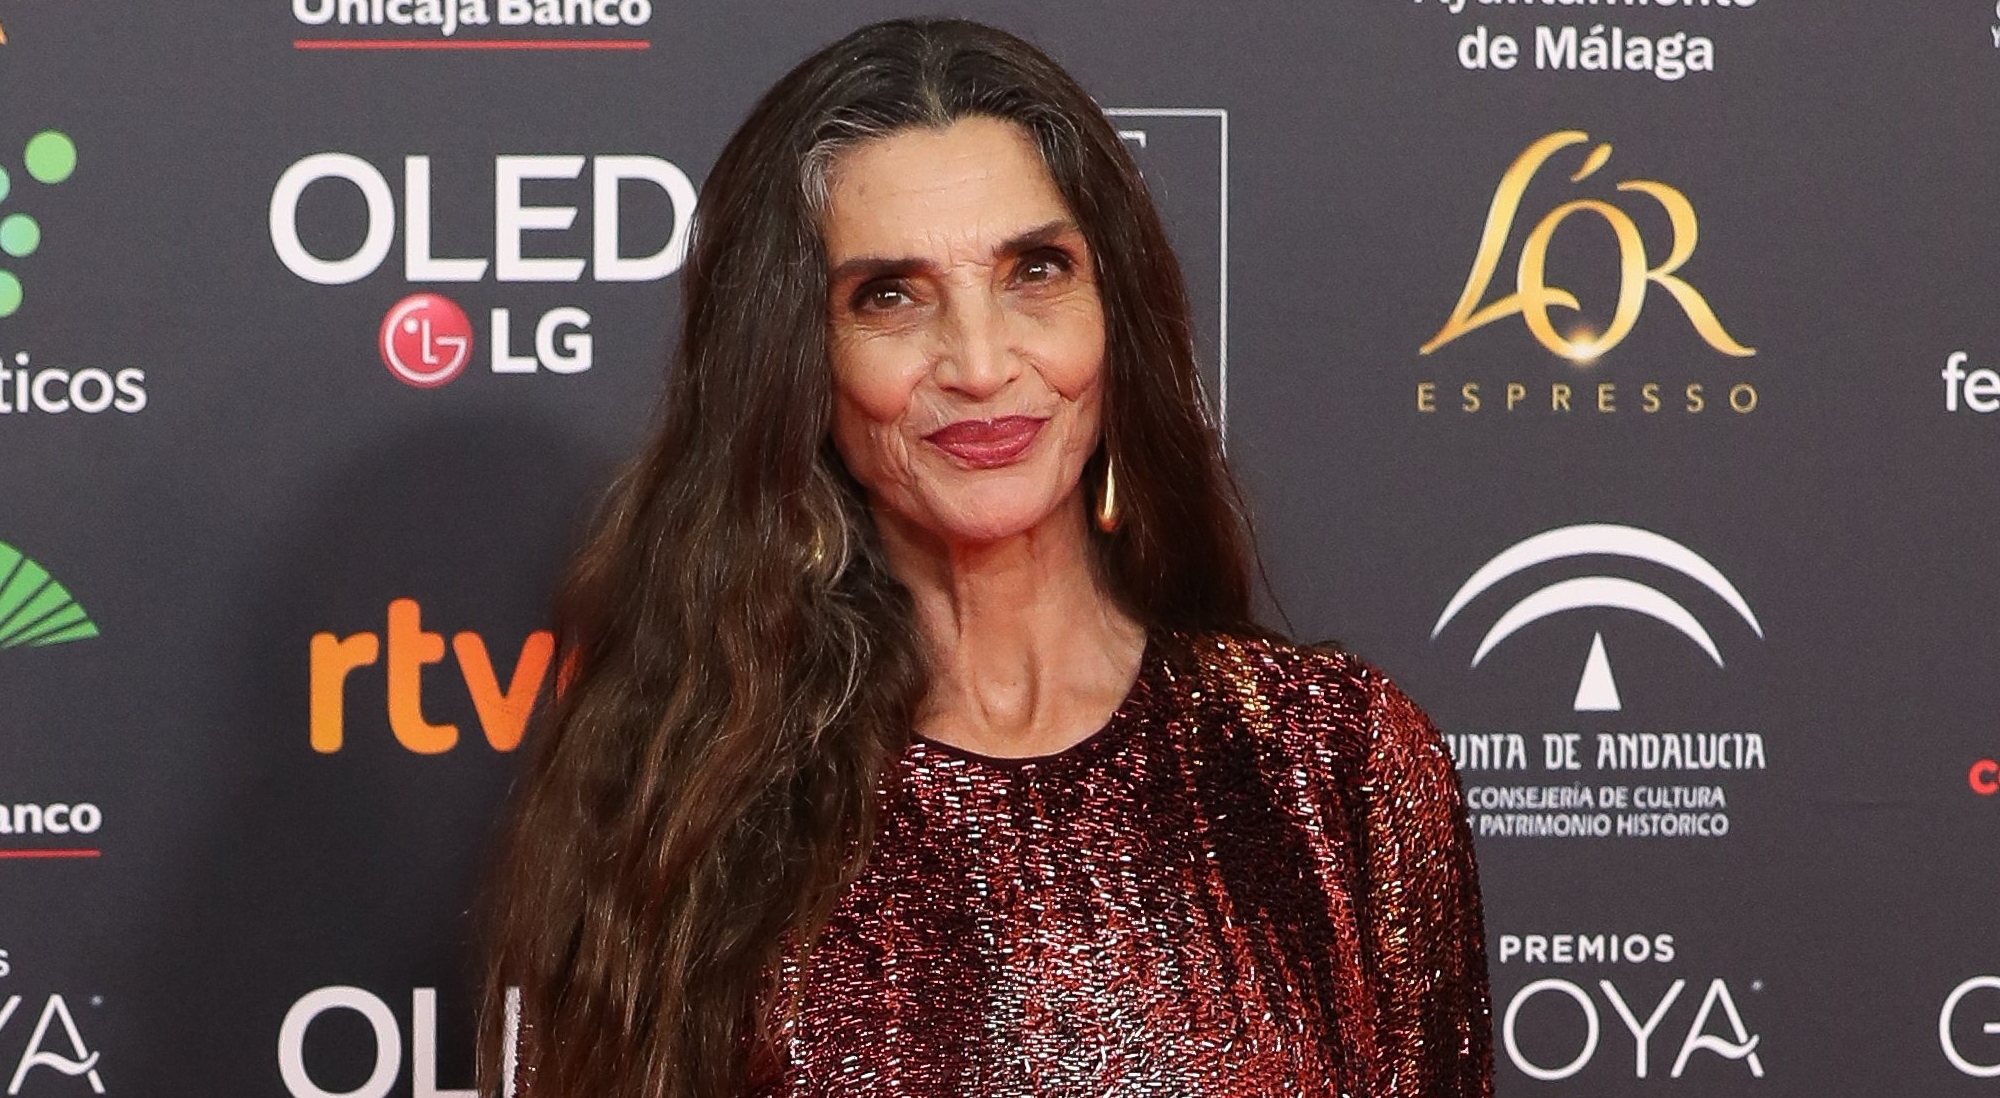 Ángela Molina en la alfombra roja de los Premios Goya 2020